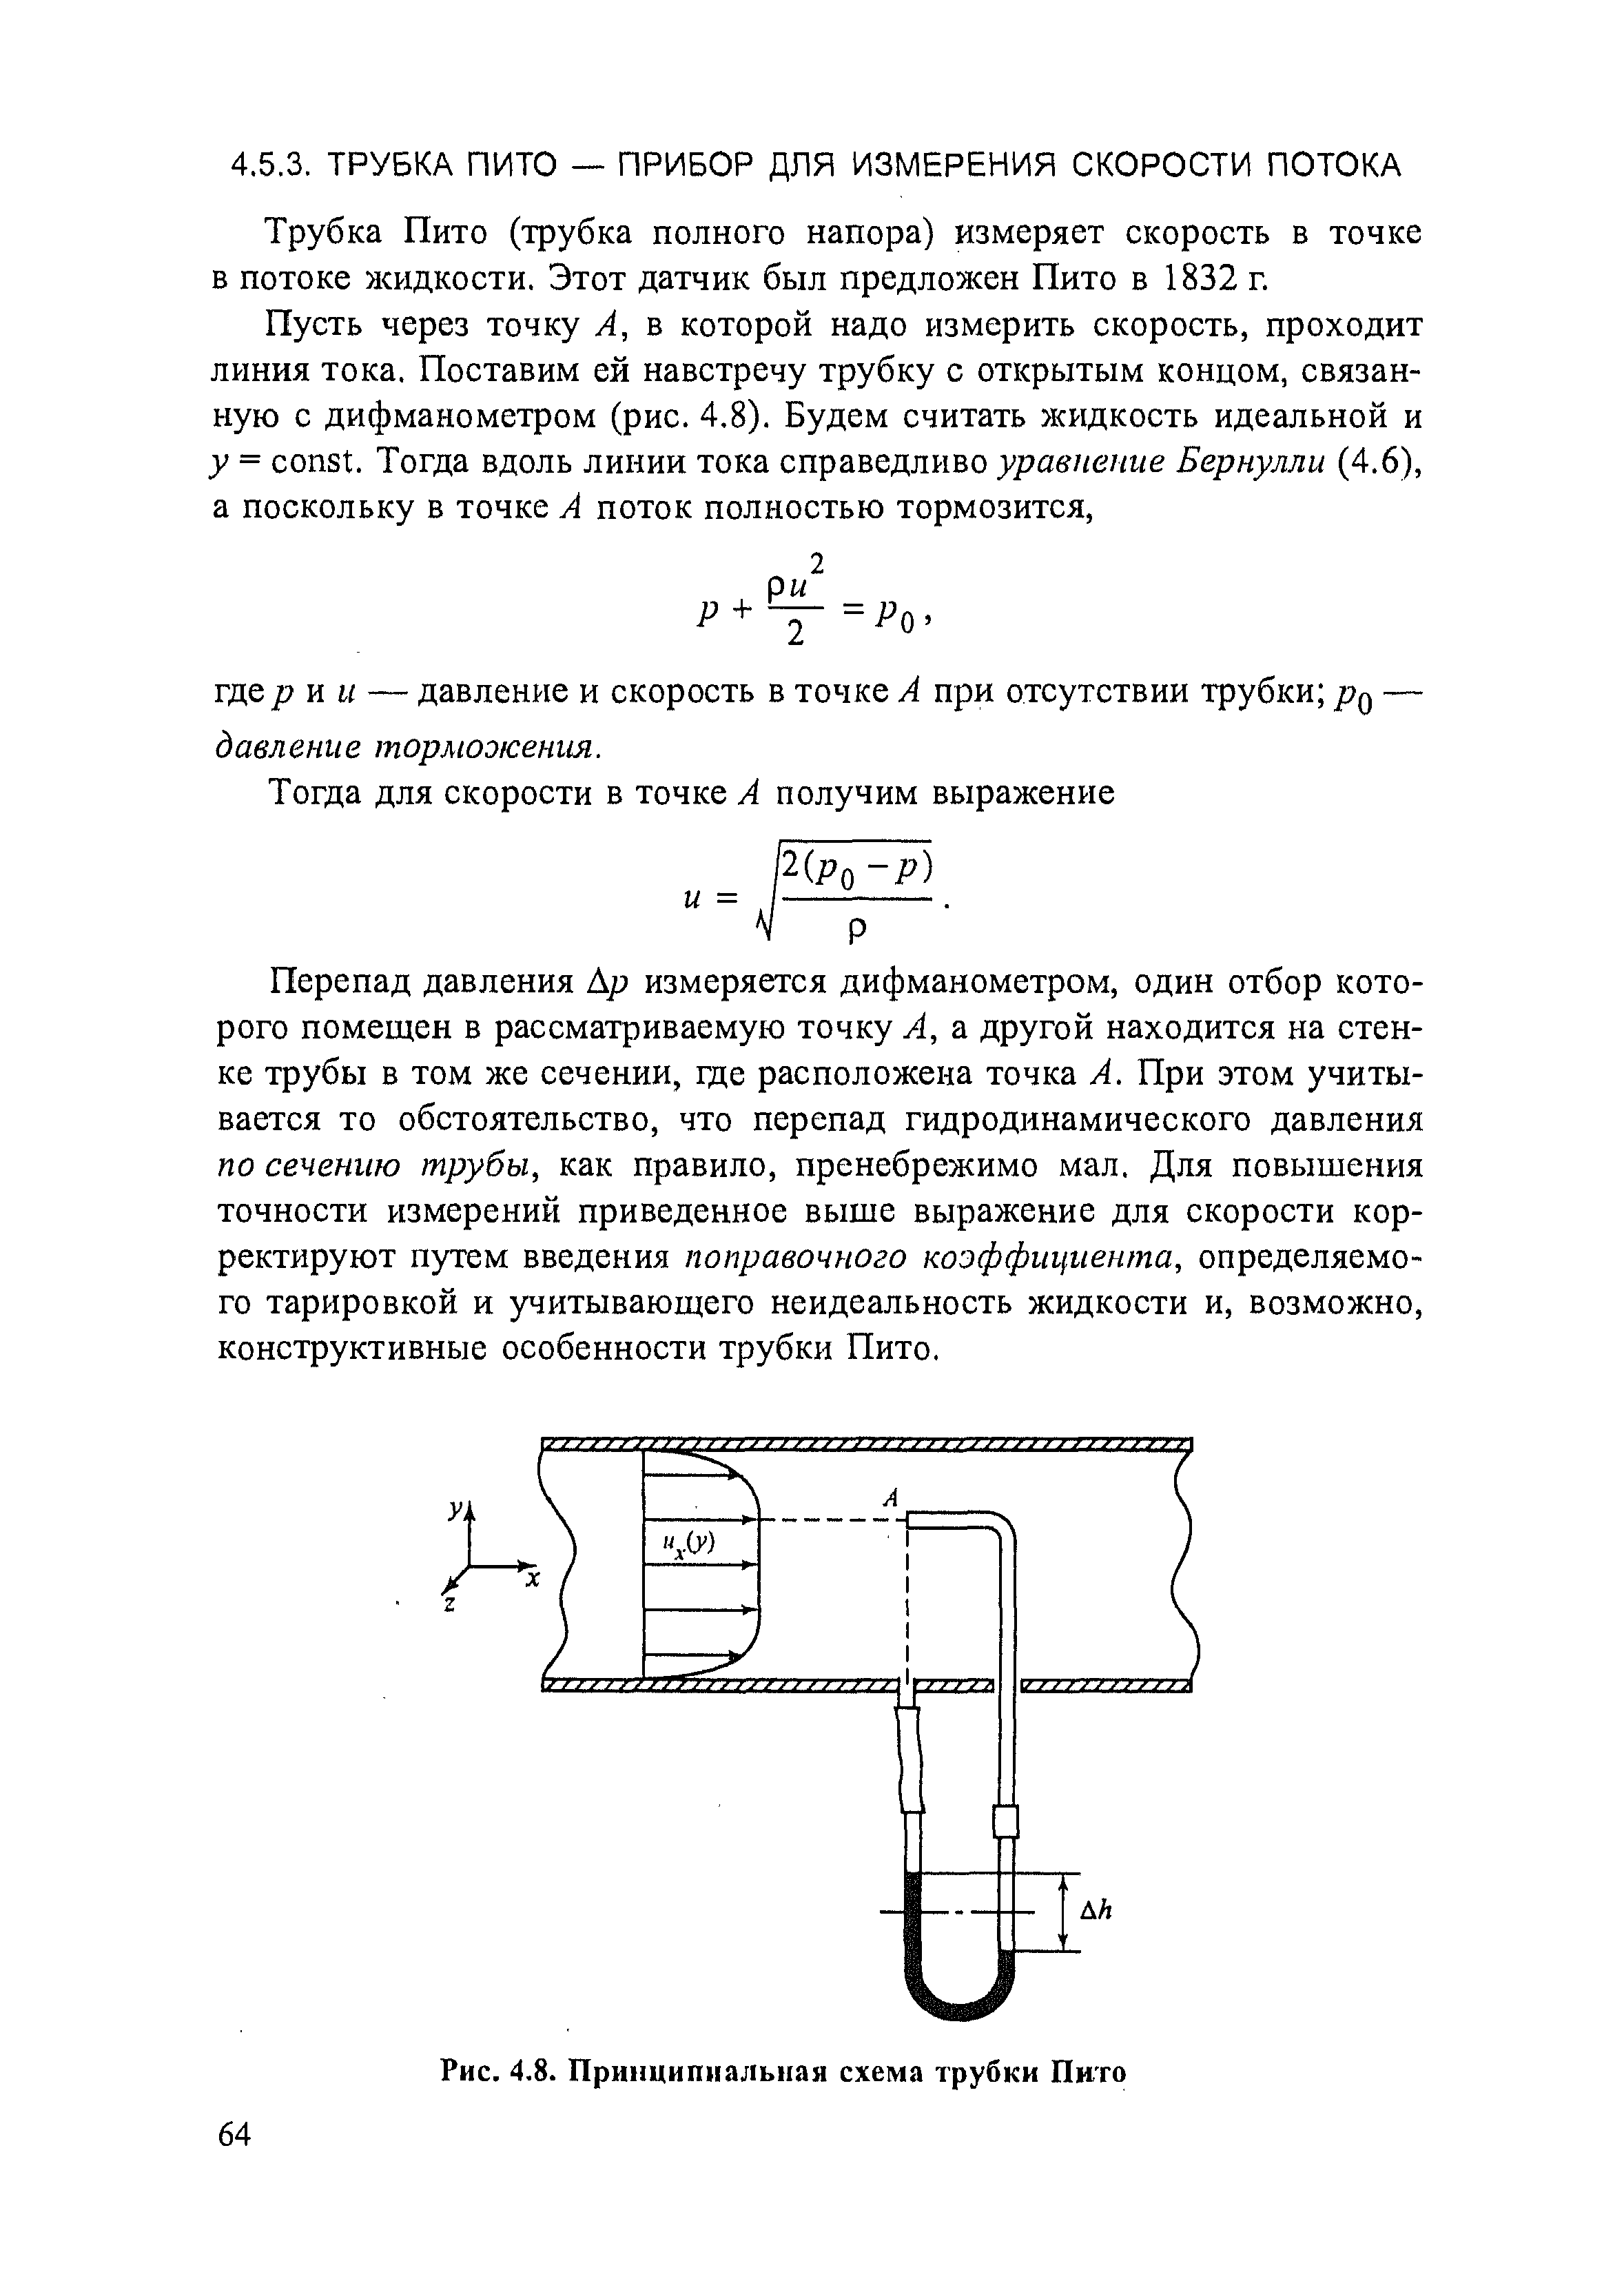 Трубка Пито (трубка полного напора) измеряет скорость в точке в потоке жидкости. Этот датчик был предложен Пито в 1832 г.
